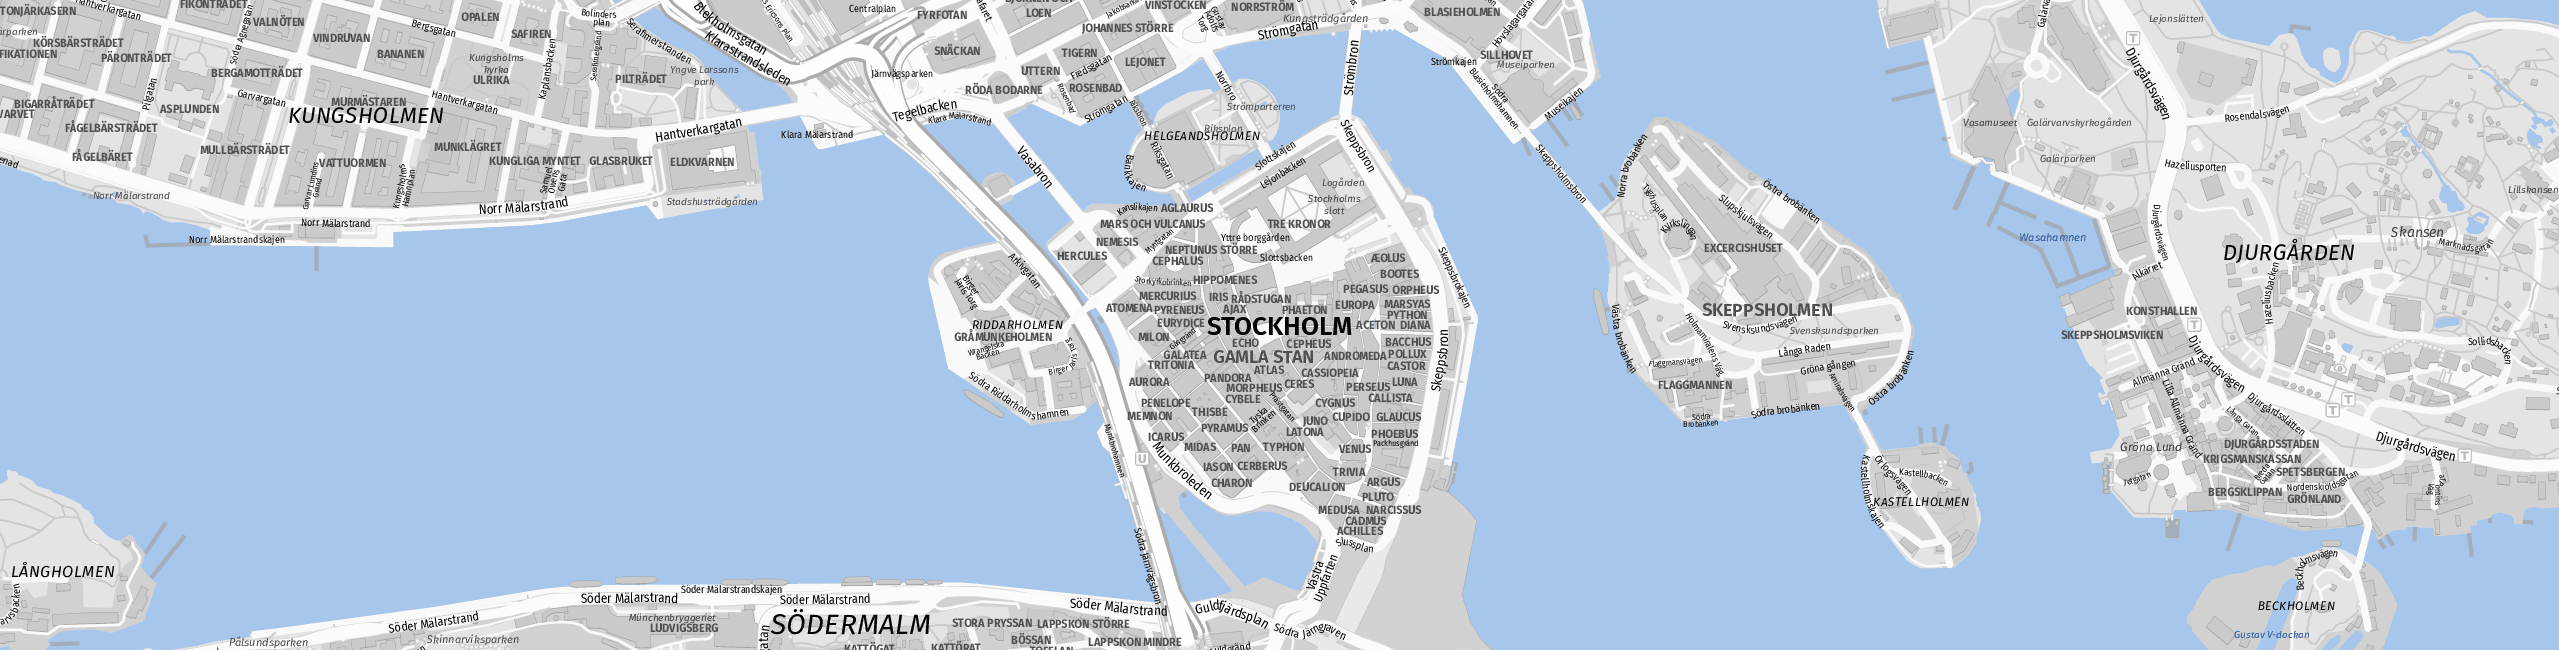 Stadtplan Stockholm zum Downloaden.